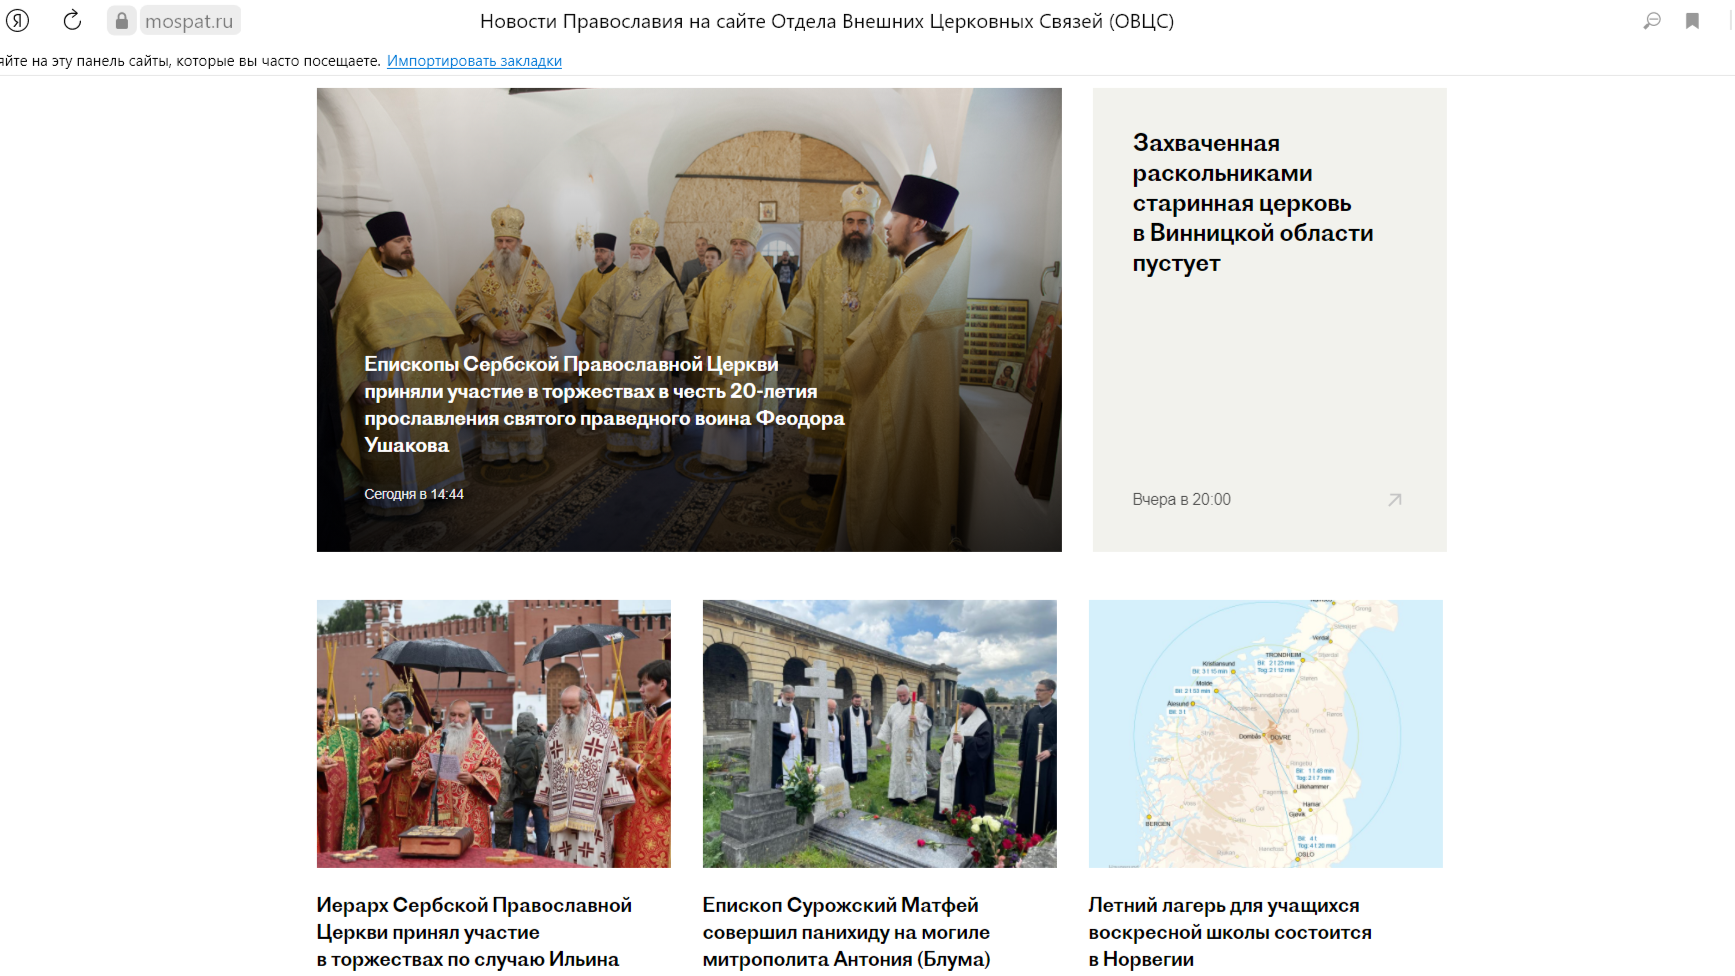 Информация о внешних связях Русской Церкви теперь доступна на 10 языках